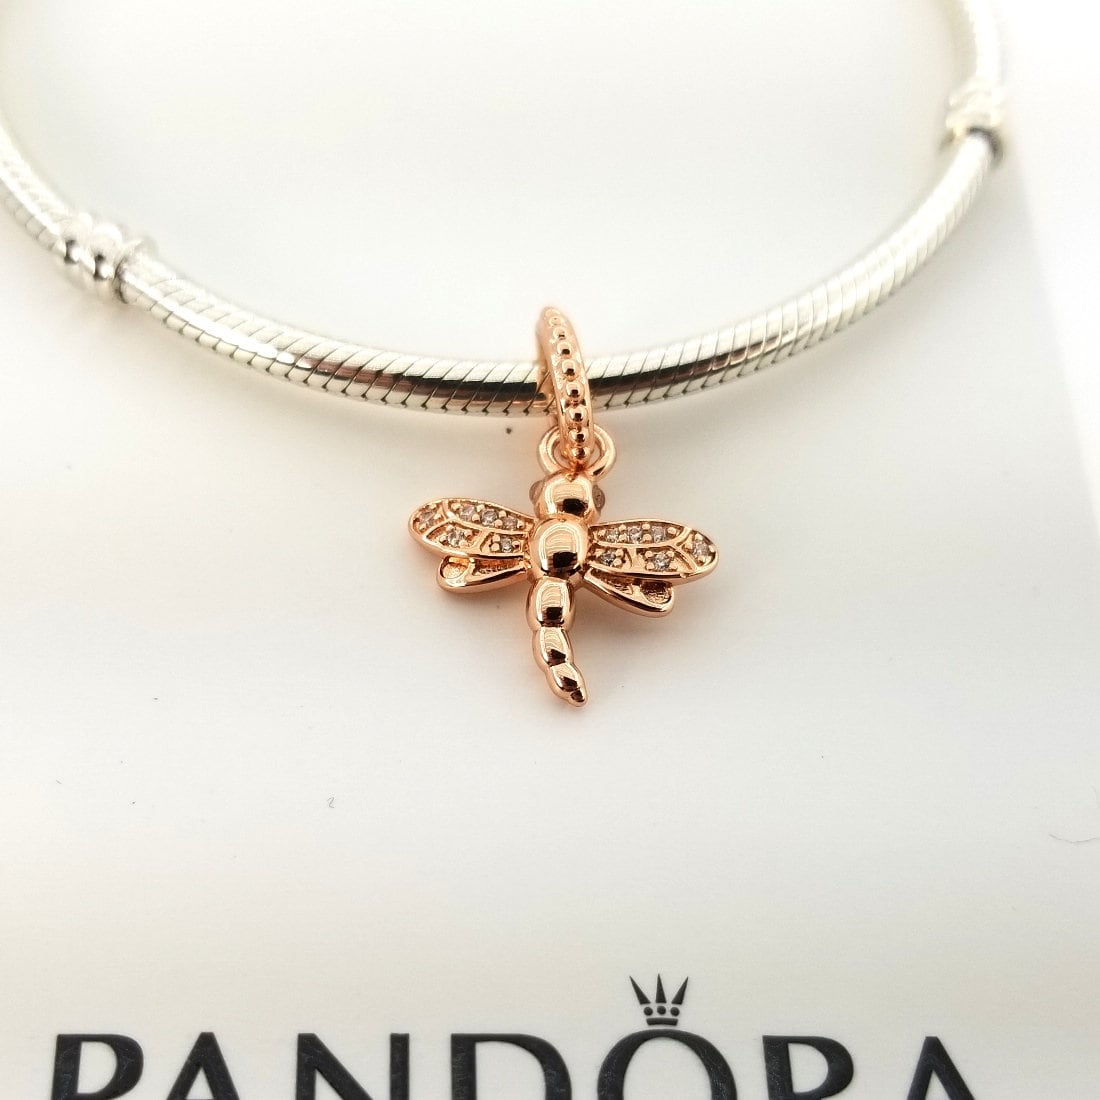 New Authentic Pandora Dreamy Dragonfly Necklace 397104CZ-65 W Hinged Box |  eBay